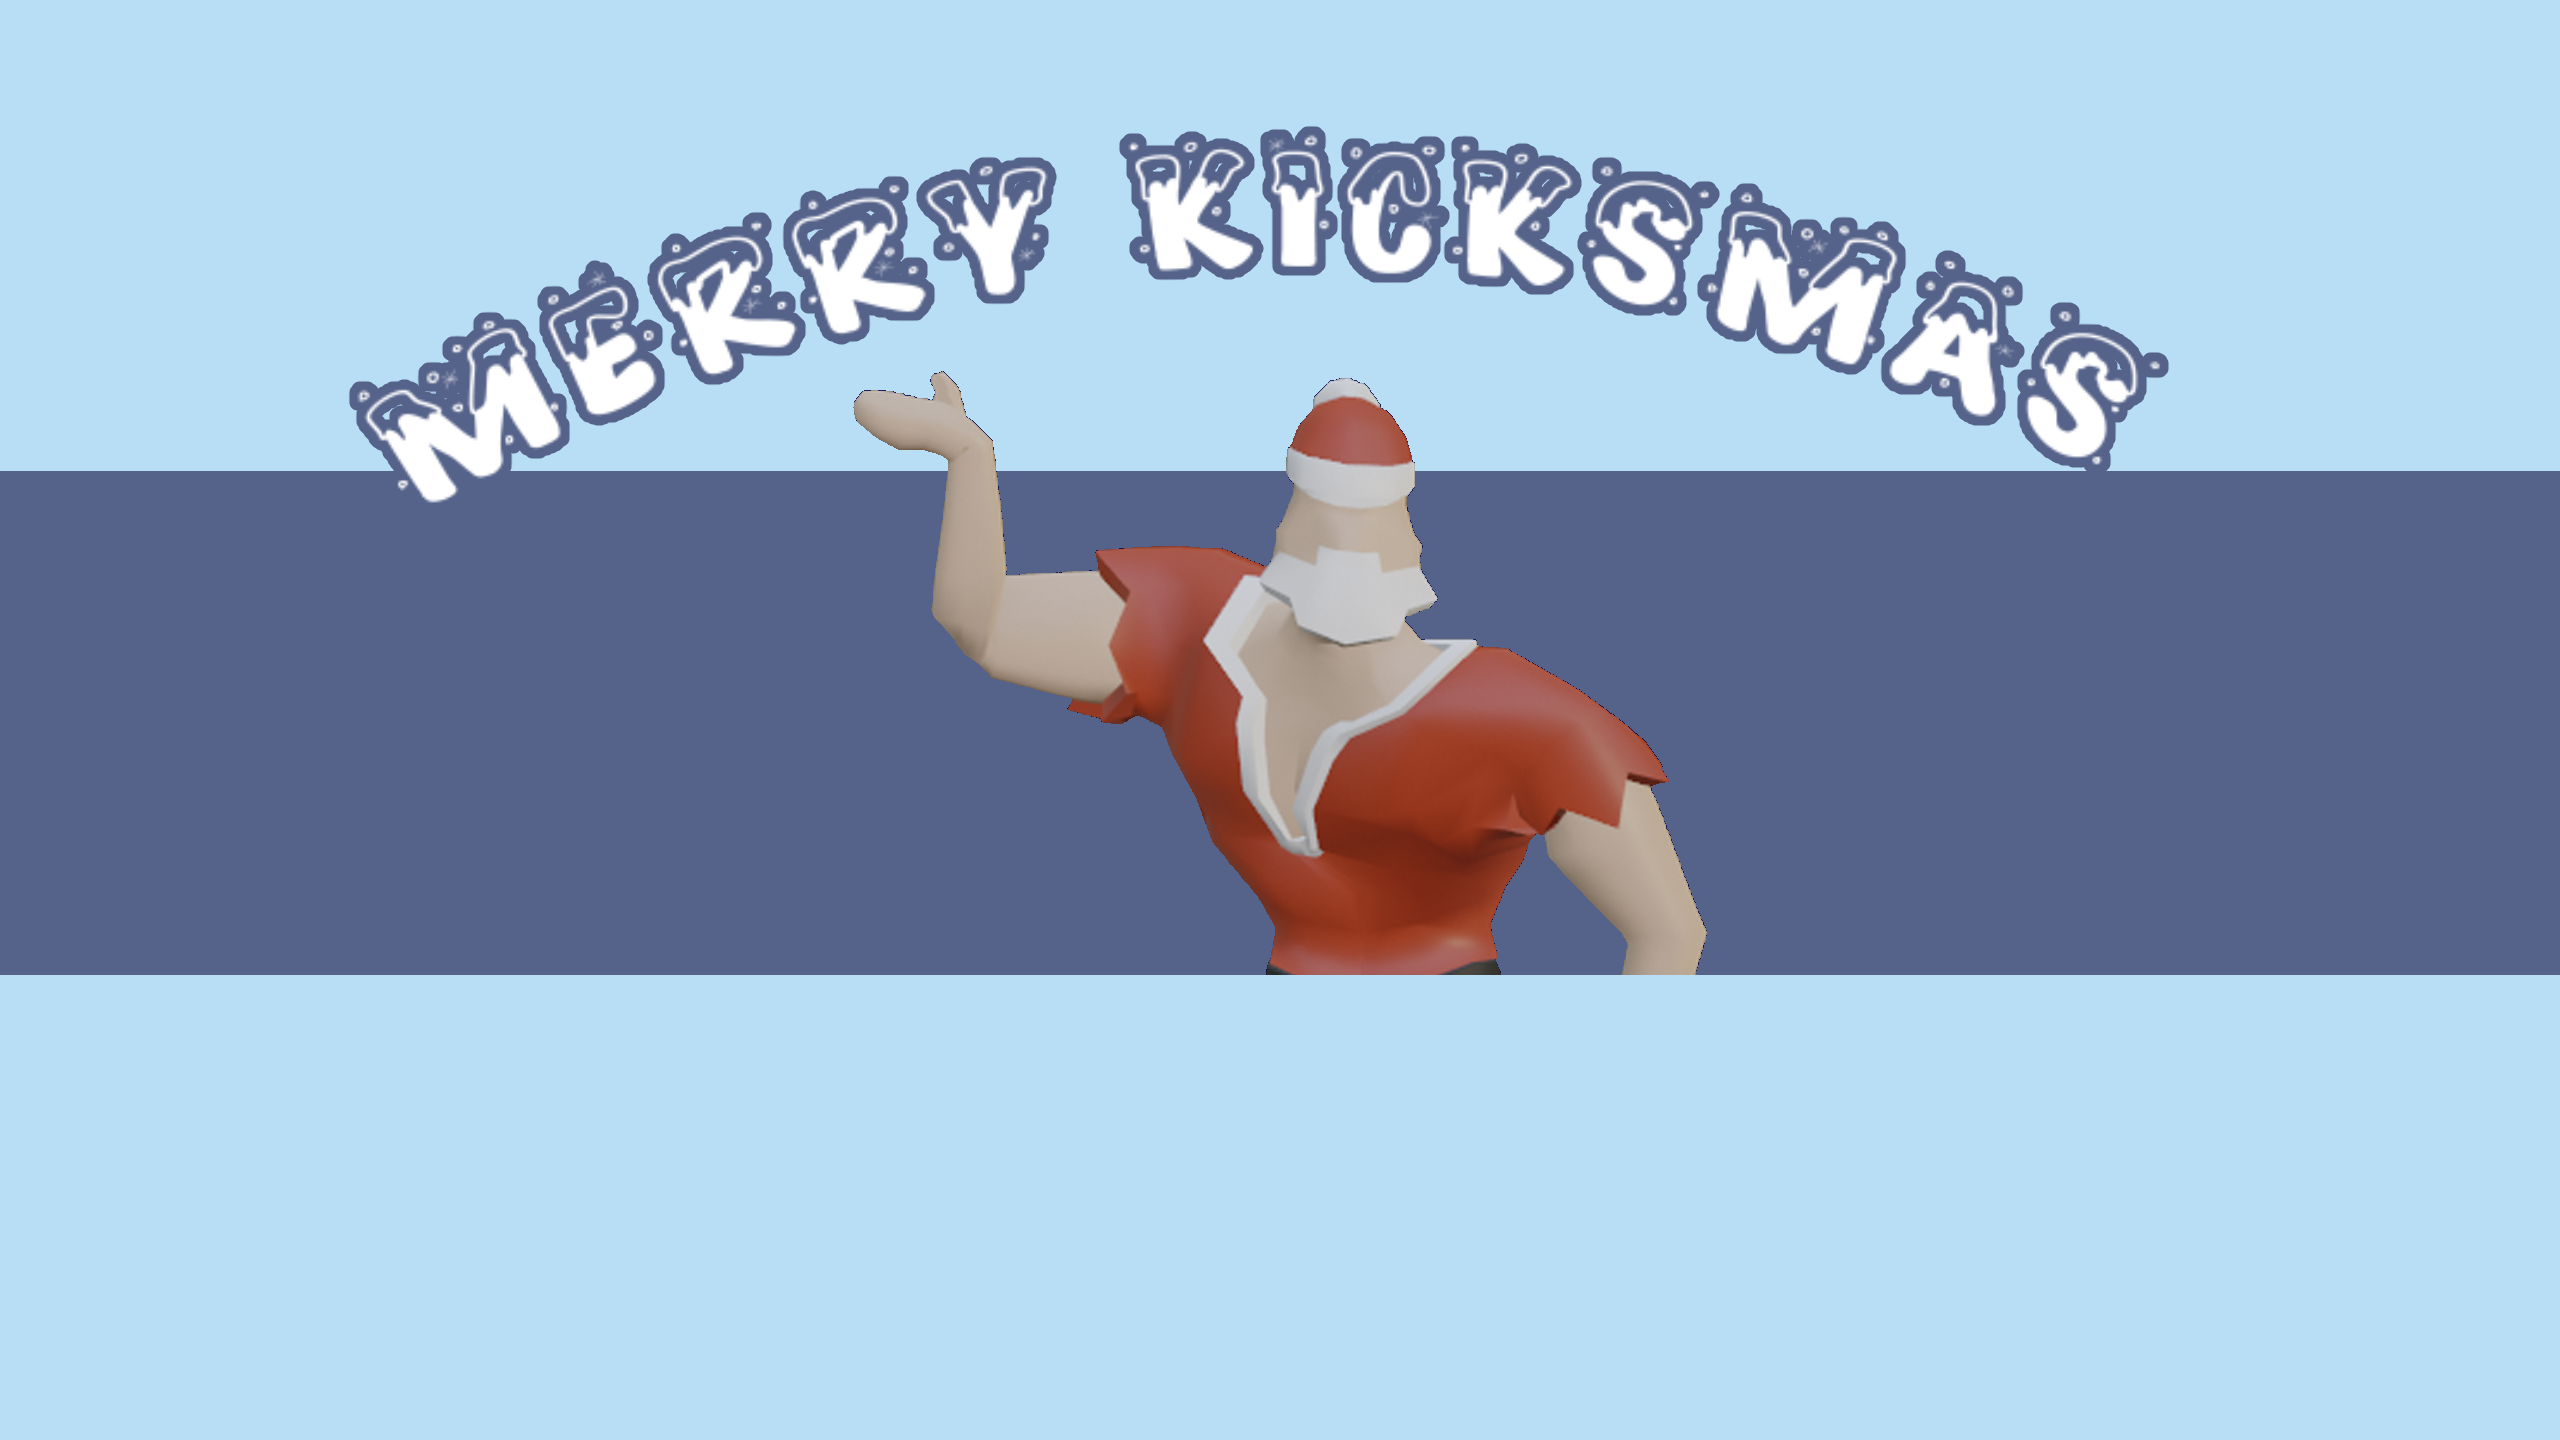 Merry Kicksmas